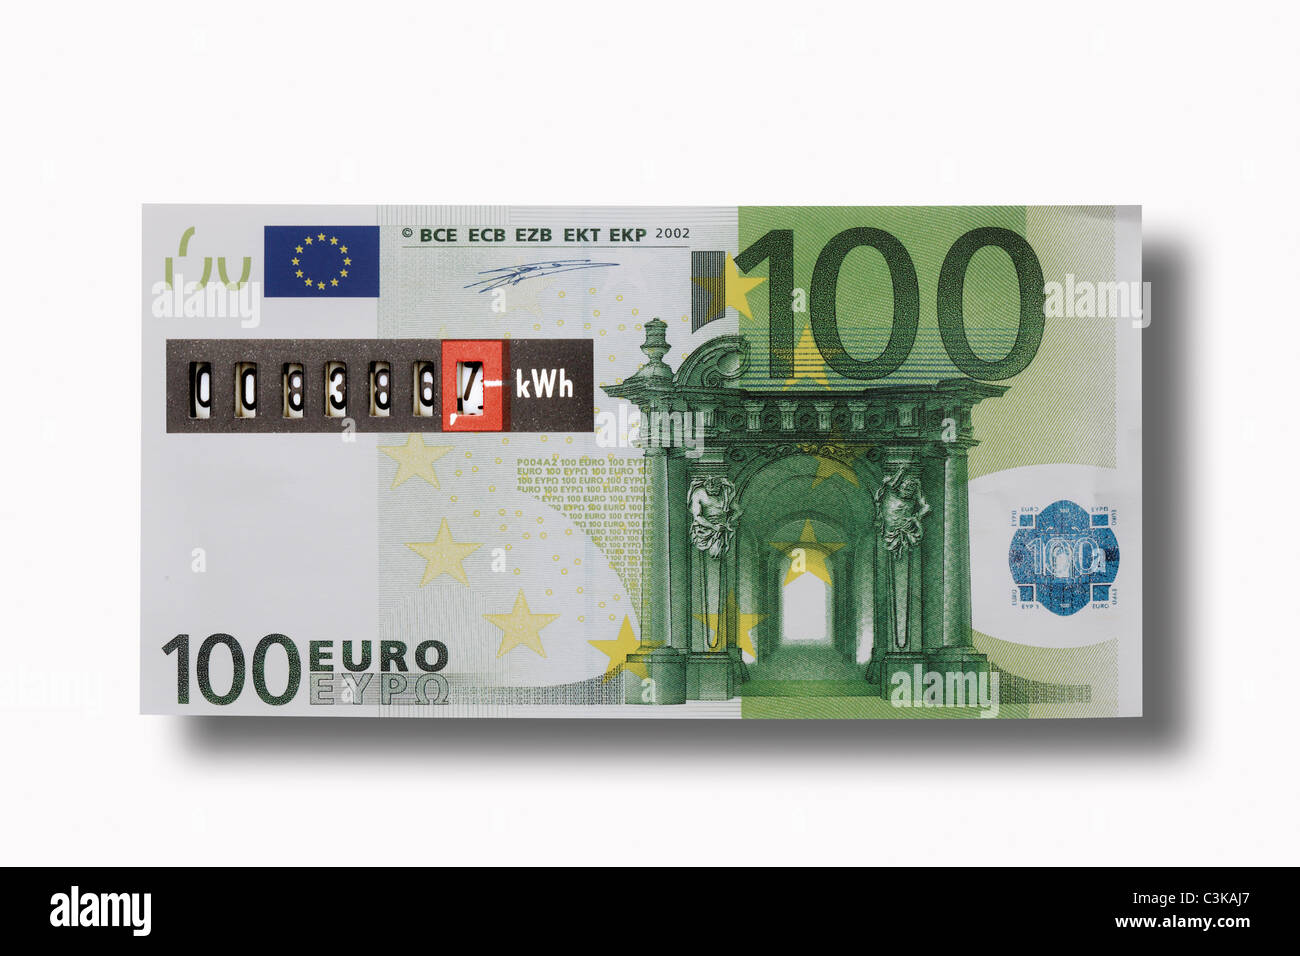 3000 евро сколько в рублях